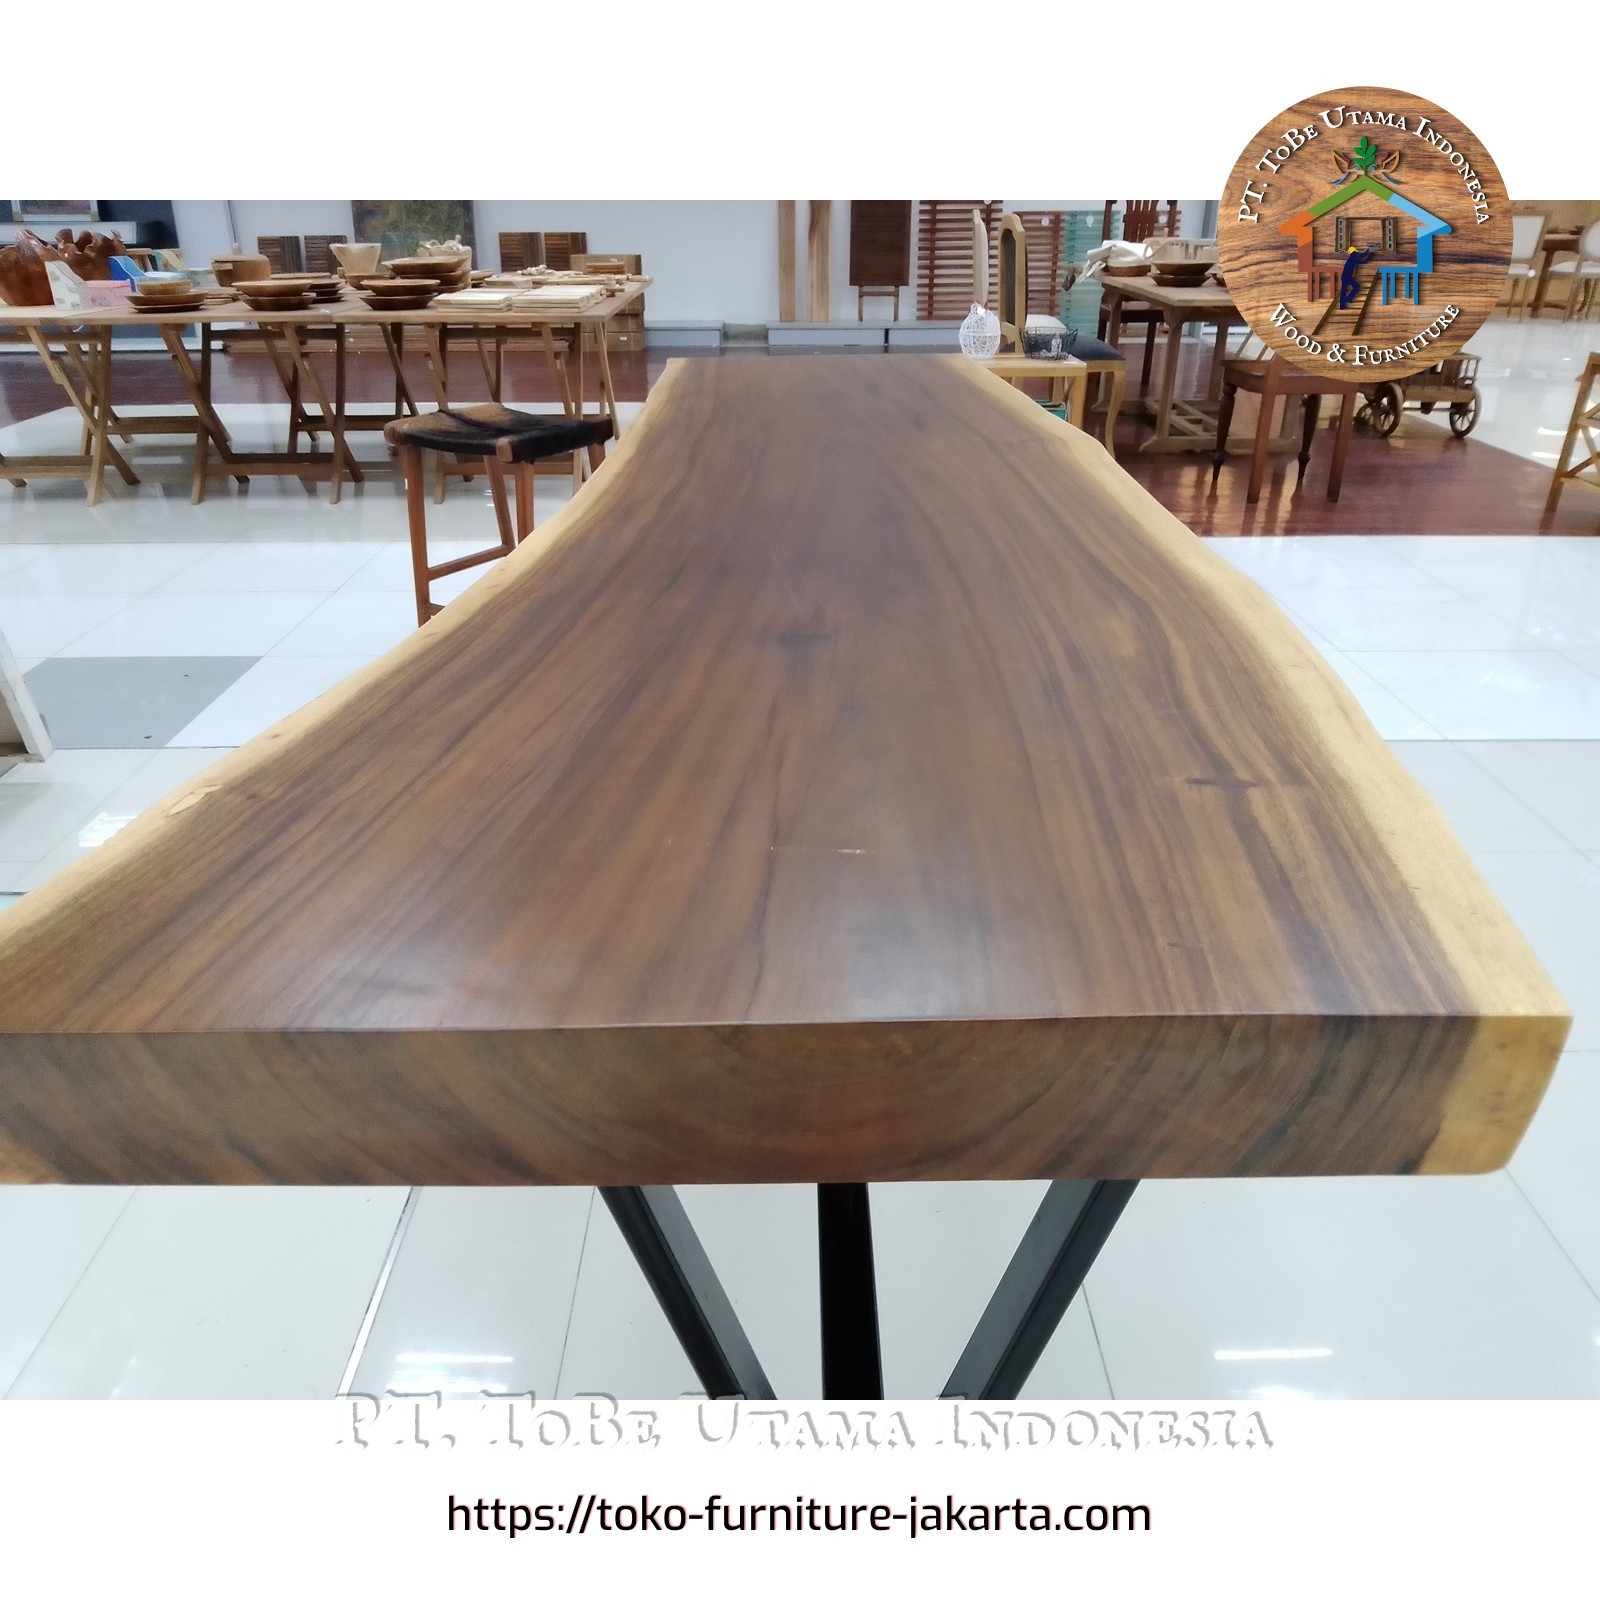 Living Room: Trembesi Wood Table (image 1 of 1).